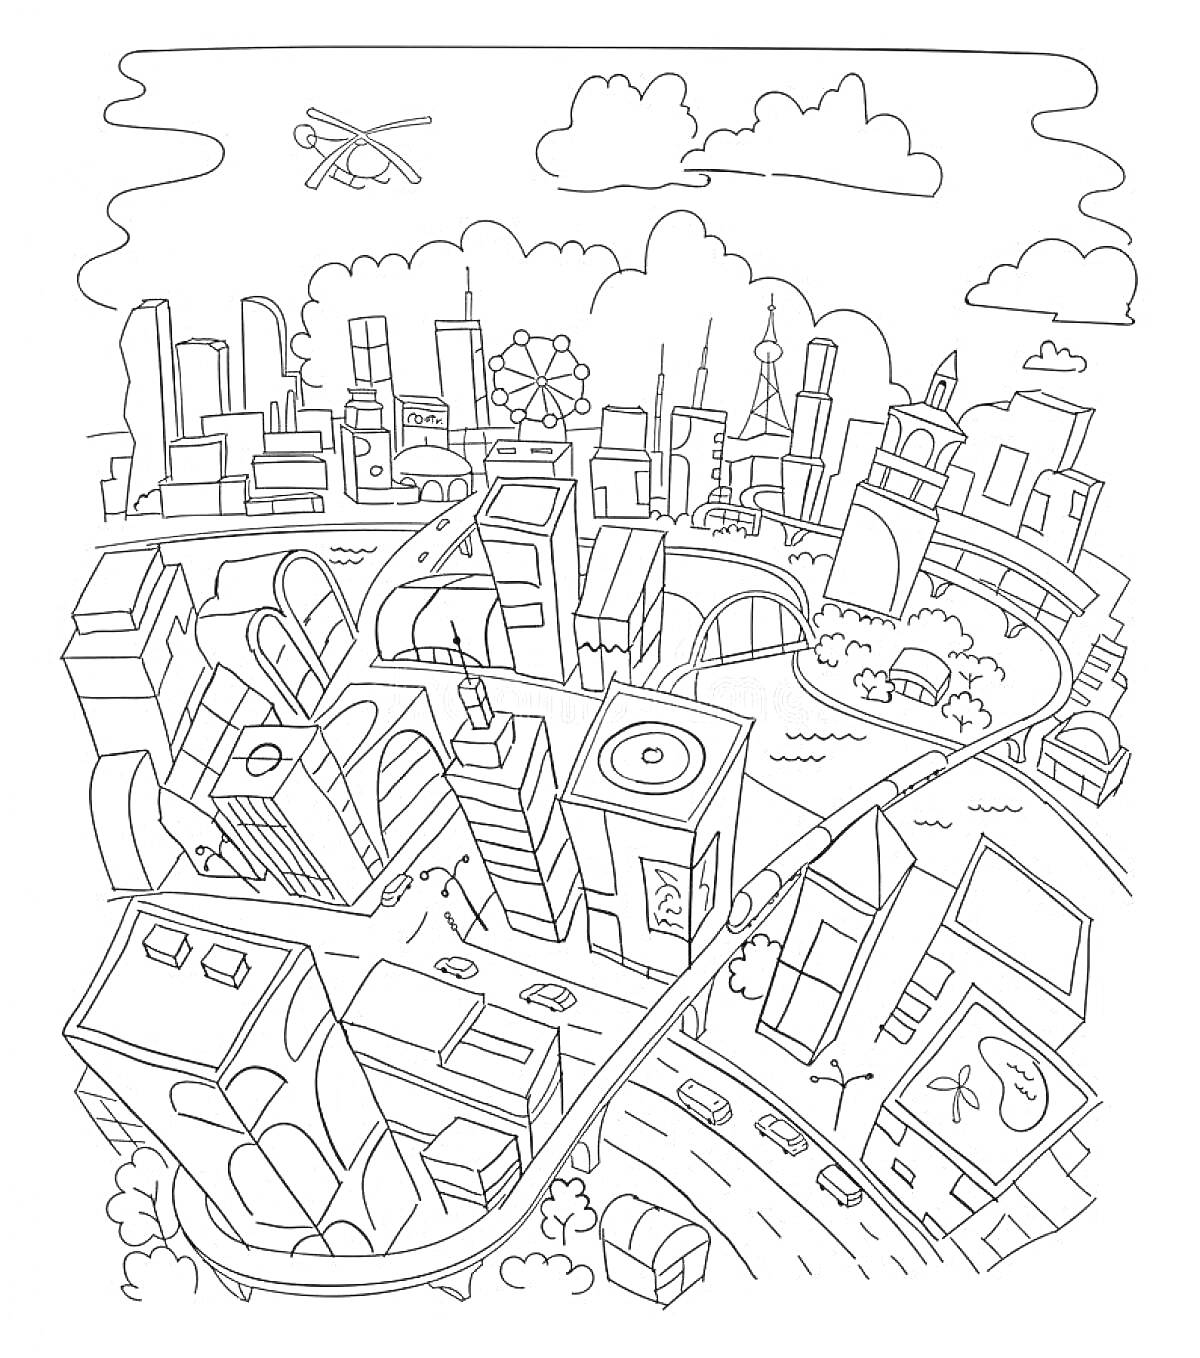 Город будущего с небоскребами, дорогами, эстакадами, воздушными транспортными средствами и современными зданиями